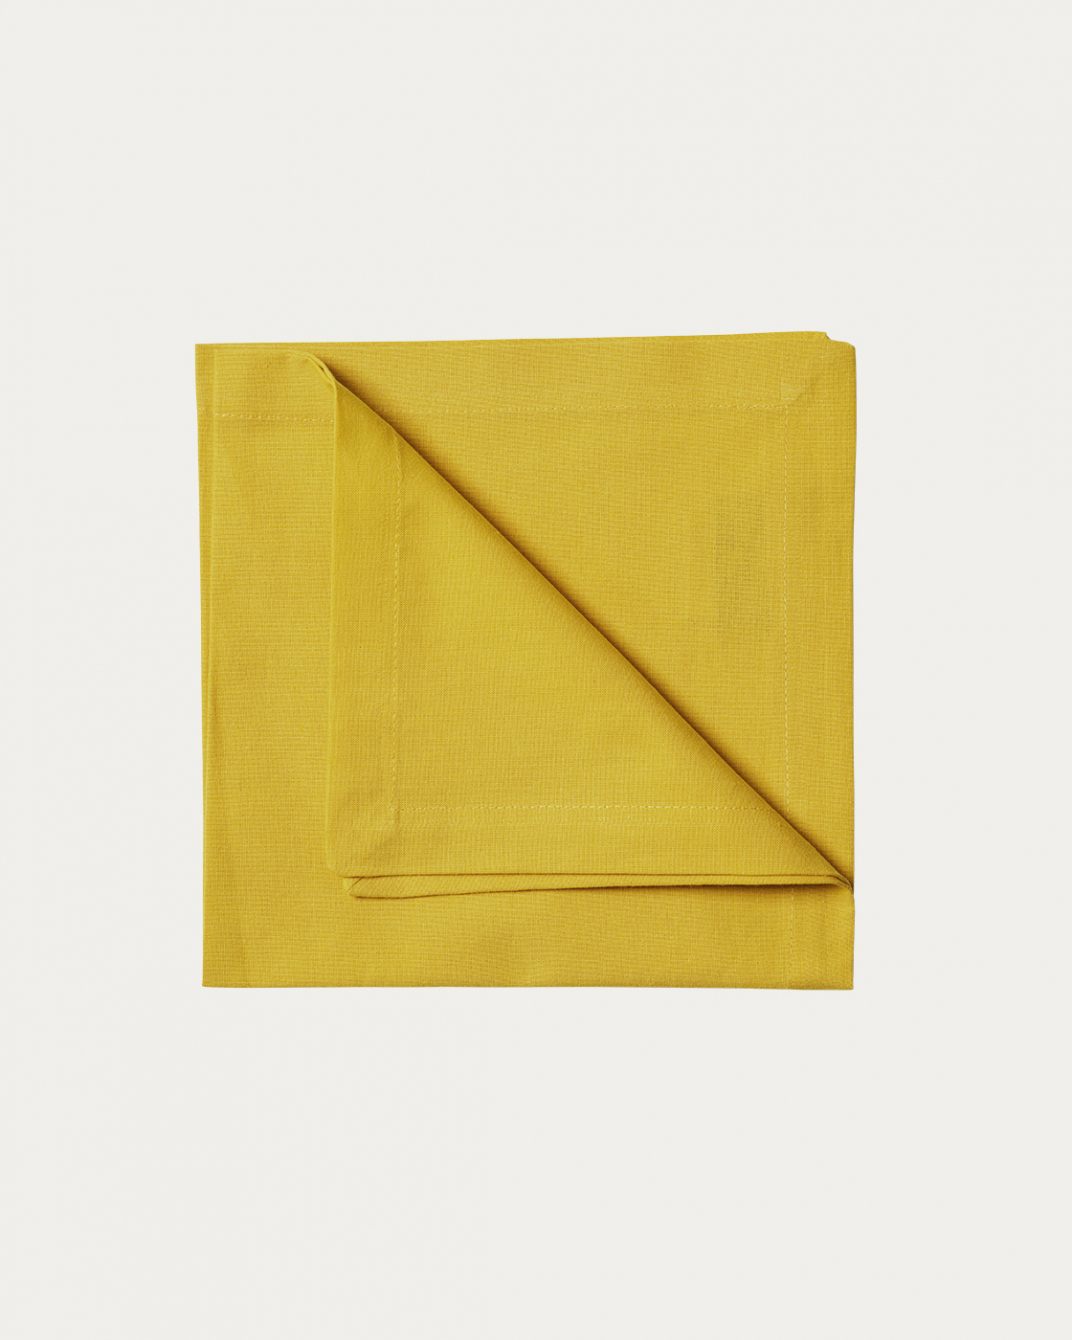 Produktbild senapsgul ROBERT servett av mjuk bomull från LINUM DESIGN. Storlek 45x45 cm och säljs i 4 pack.